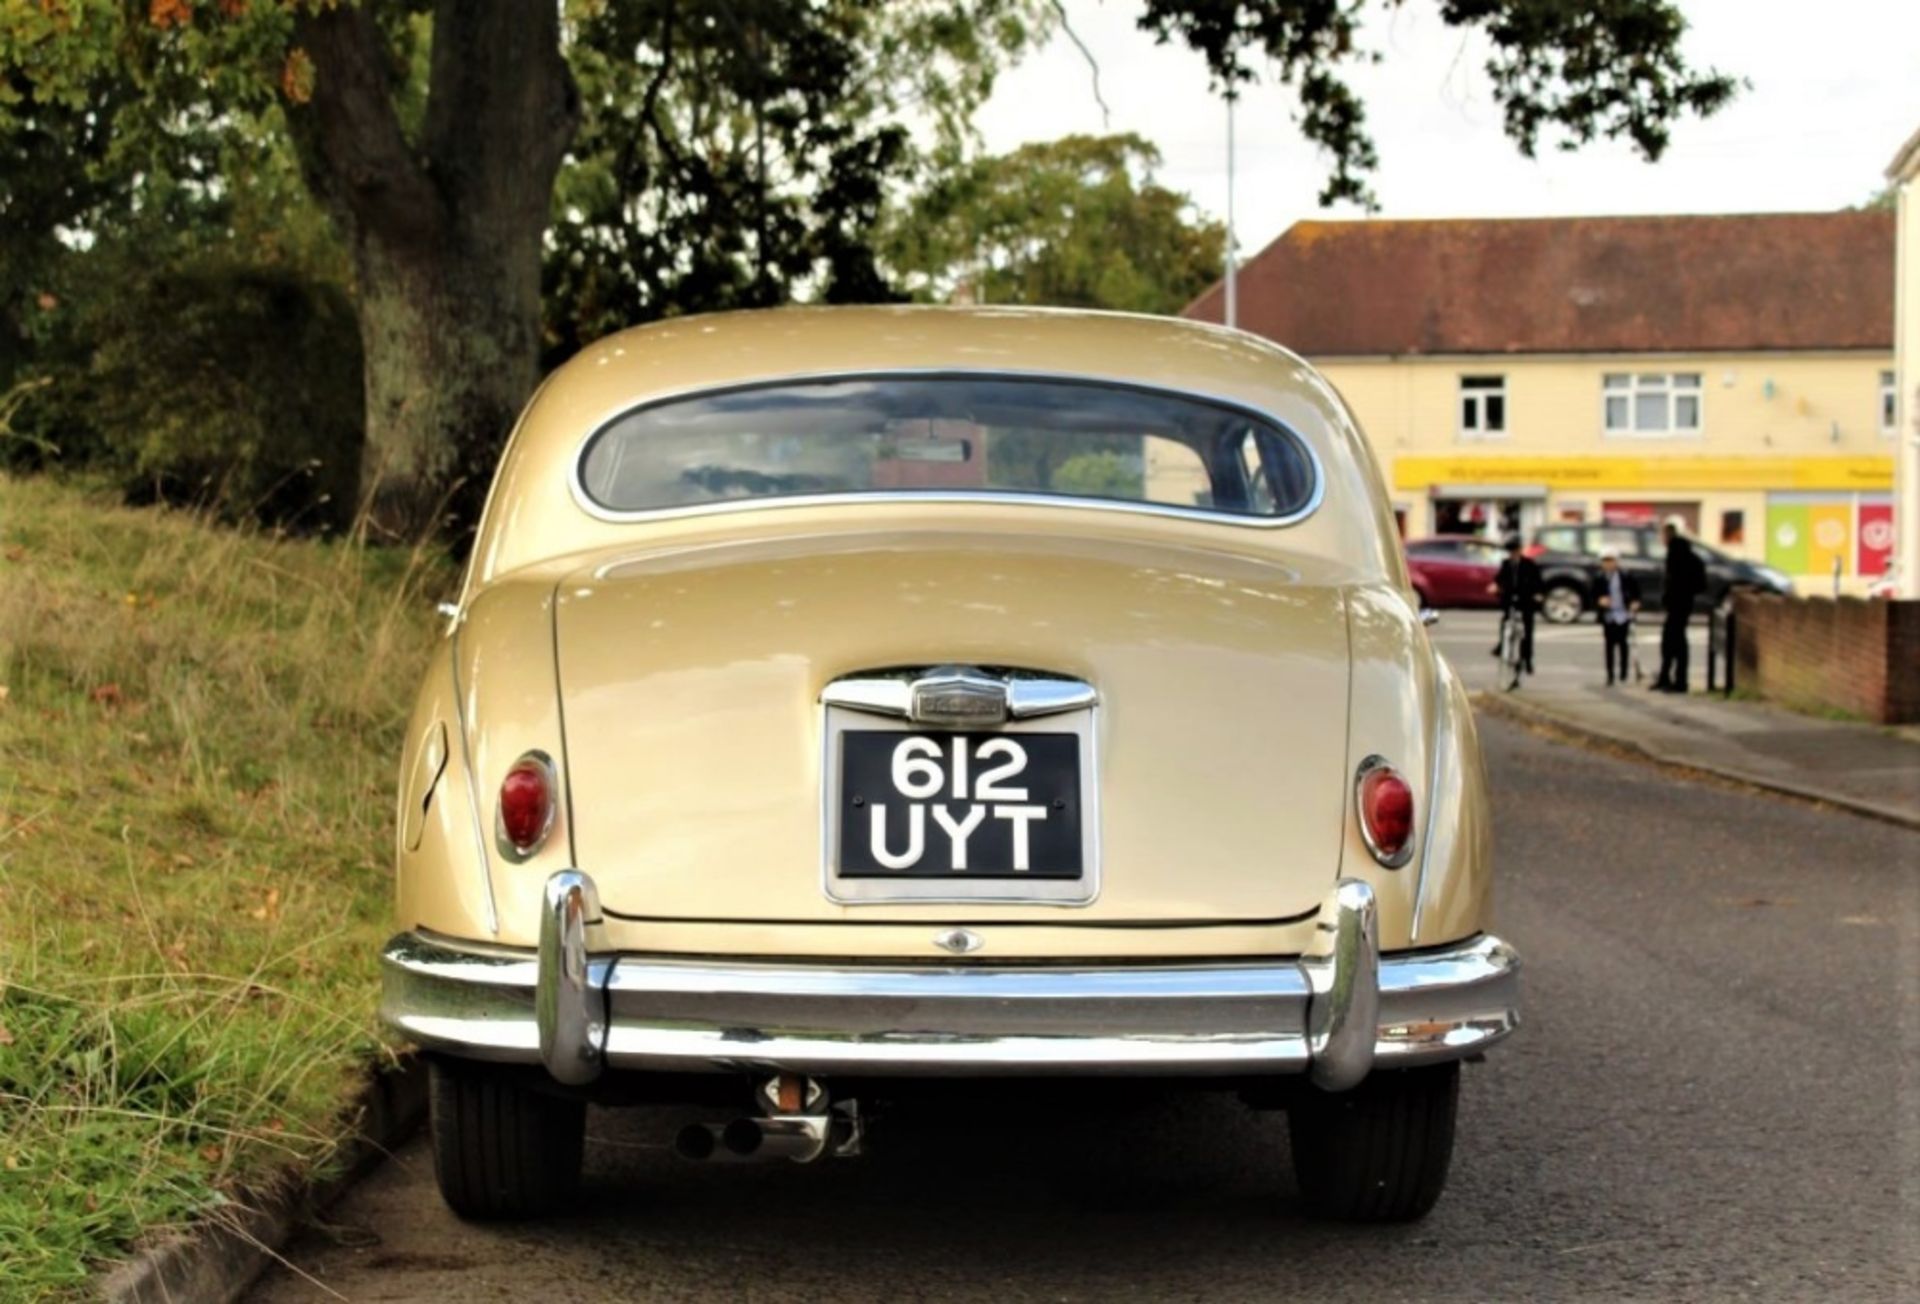 1958 JAGUAR ‘MARK 1’ 2.4 LITRE SALOON Registration Number: 612 UYT Chassis Number: S912121 - Image 5 of 13